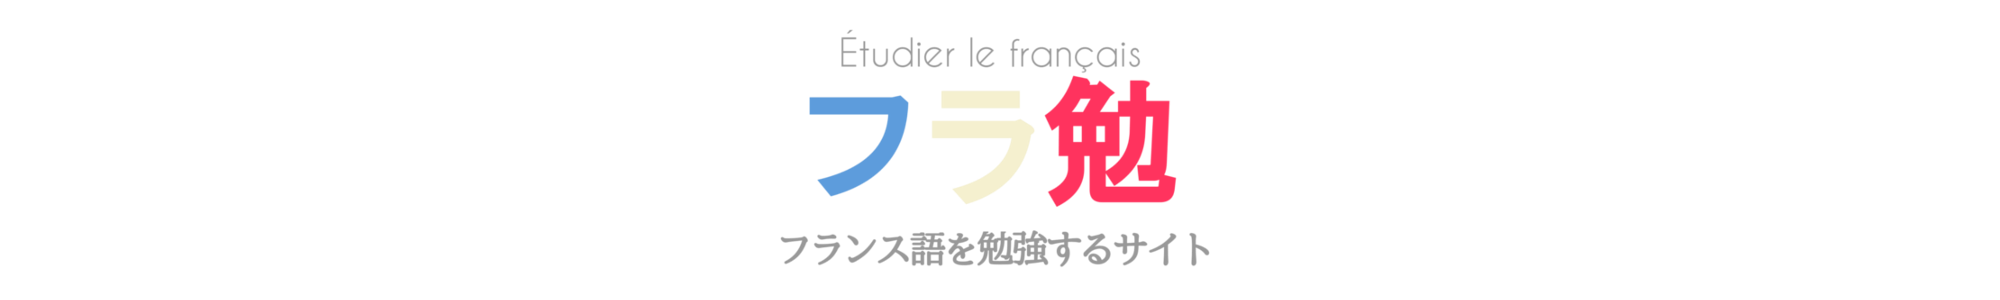 フランス語文法 接続法現在 過去 半過去 大過去の用法と作り方を例文とともに解説 フラ勉 フランス語を勉強するサイト